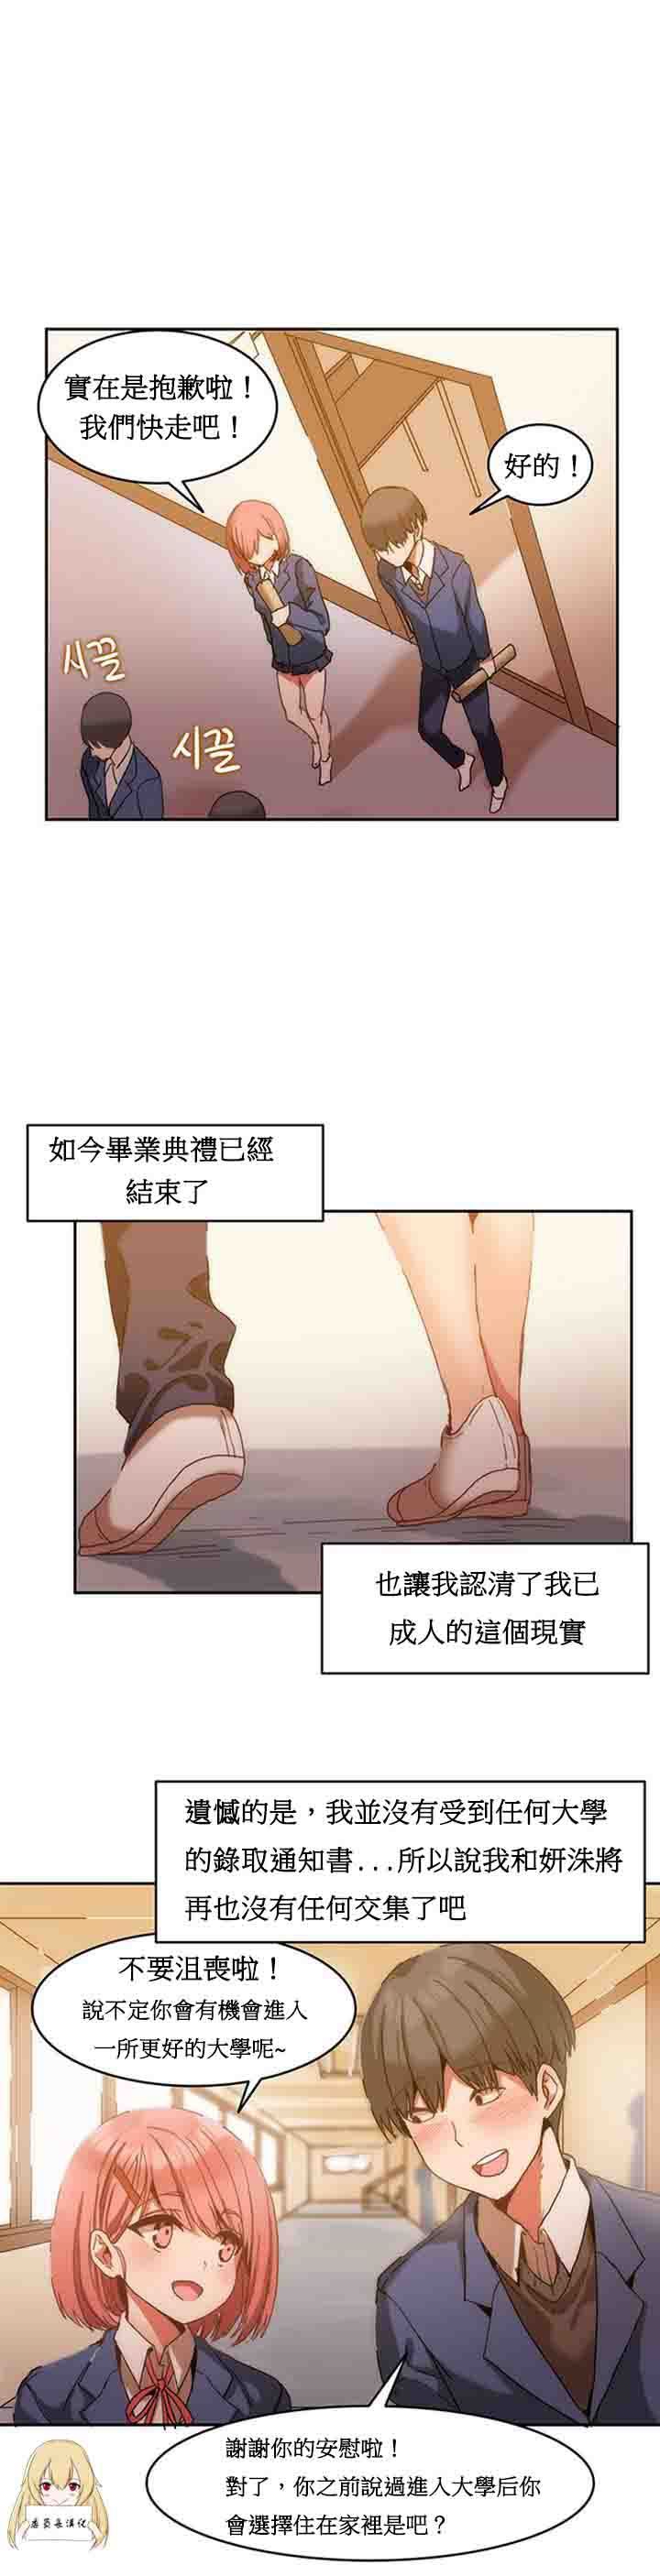 韩国污漫画 寄宿公寓-陰氣之洞 第1话 4